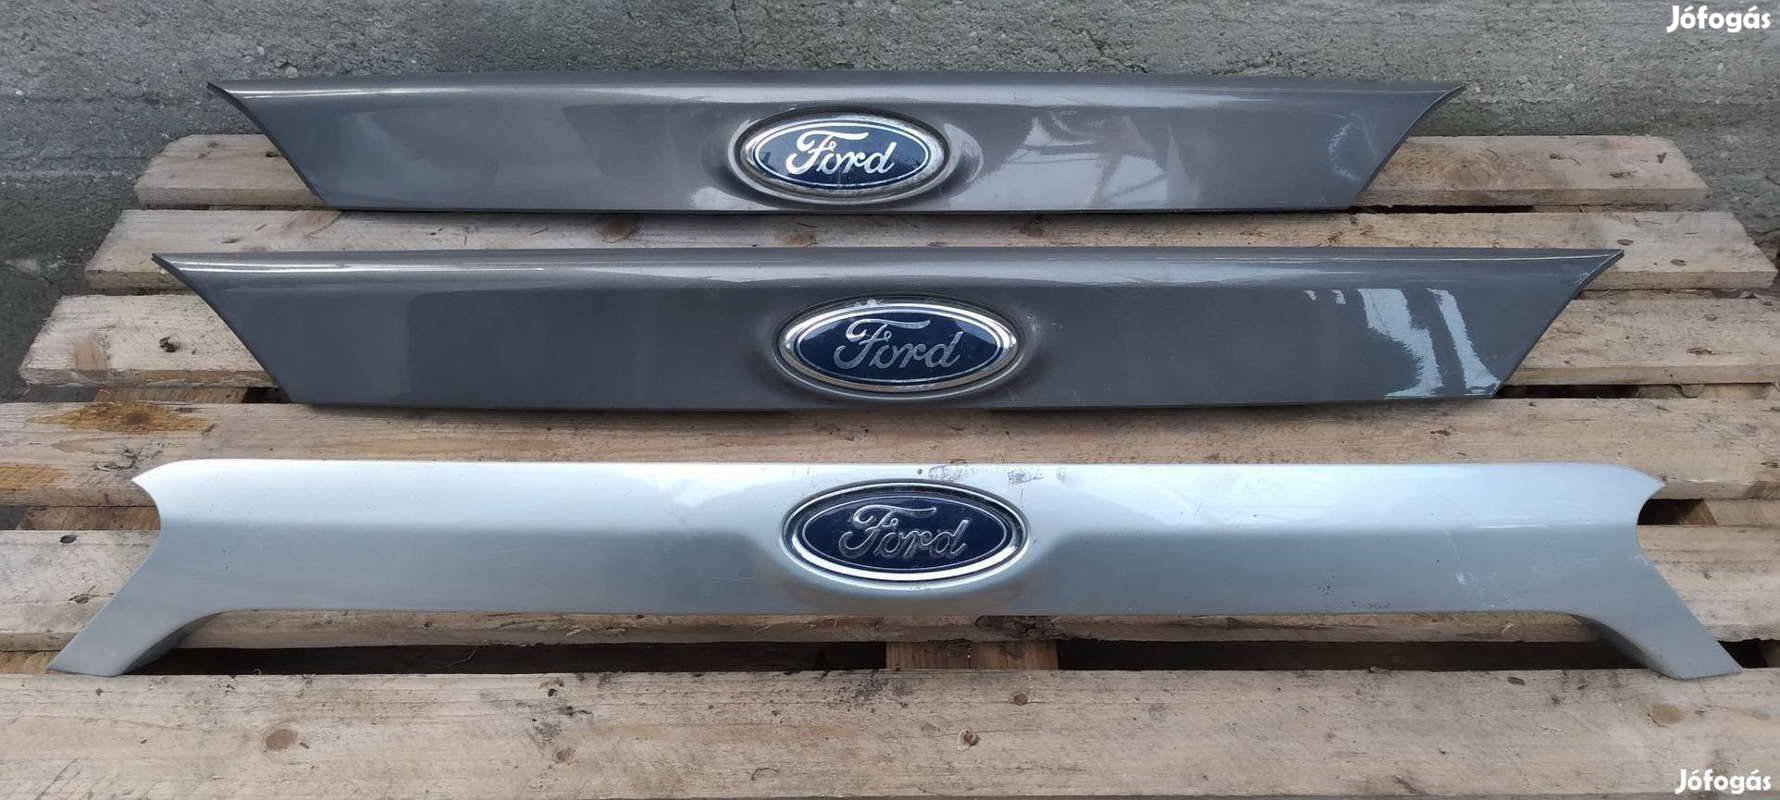 Eladó Ford Focus MK3 csomagtér ajtónyitó gomb 2011 től